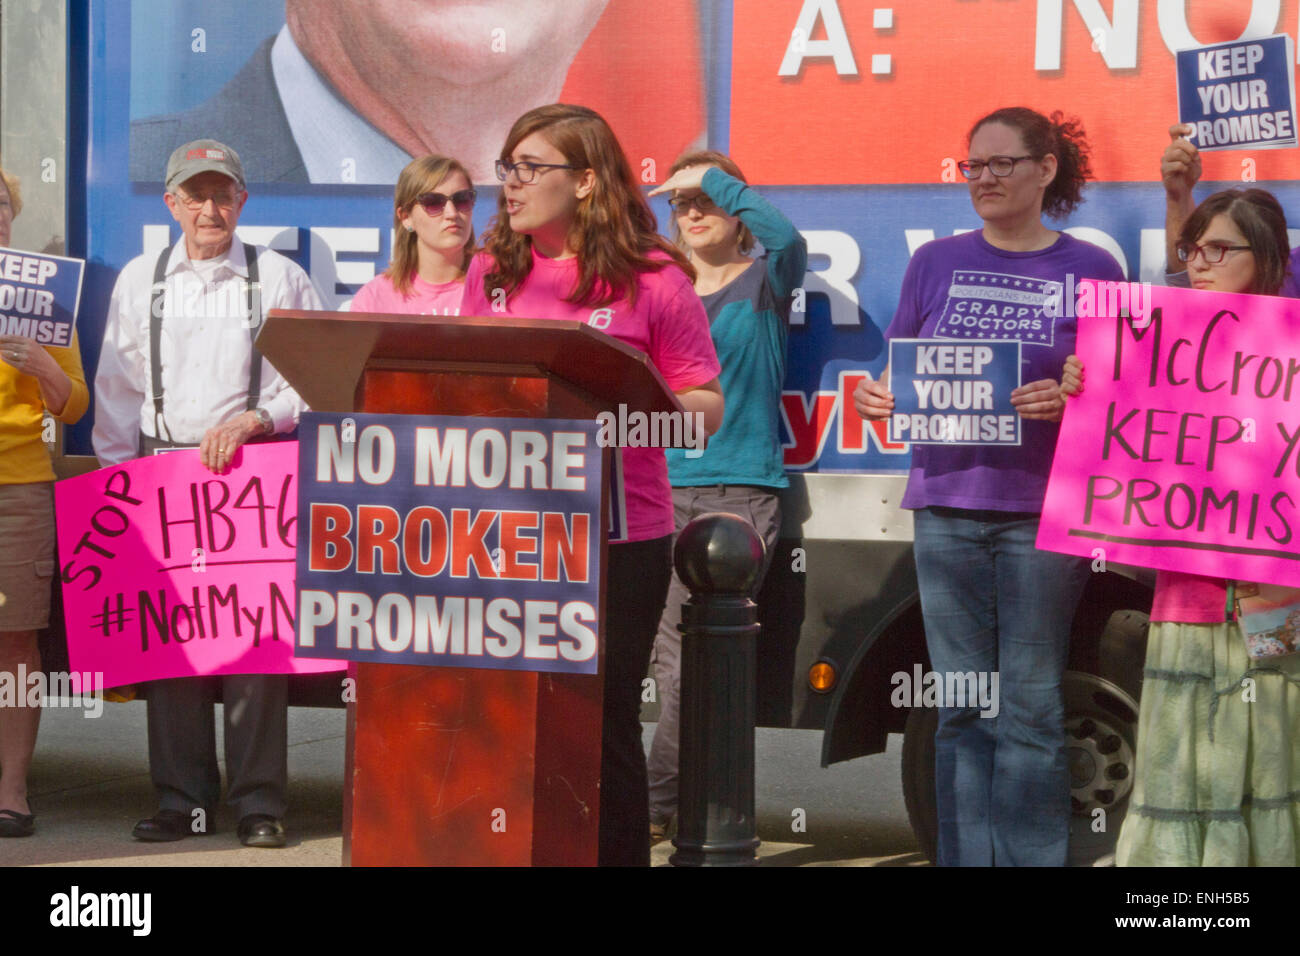 En Asheville, Carolina del Norte, EE.UU. - el 4 de mayo de 2015: Multitud de gente mantenga signos y demanda el gobernador McCrory de Carolina del Norte para mantener su promesa de no restringir el acceso al aborto en un mitin protestaban por ley de aborto Carolina del Norte #465, que requiere una mucho mayor tiempo de espera para las mujeres que buscan abortos el 4 de mayo de 2015 en el centro de Asheville, NC el aborto, los derechos, la protesta, el rally, en Asheville, Carolina del Norte, estado, política, legislación, el gobernador McCrory, los manifestantes, los signos, la demanda, la demostración, el Proyecto de Ley 465, restricciones de acceso, la promesa, el período de espera, en el centro de la ciudad, la política, el gobierno, los hombres, w Foto de stock